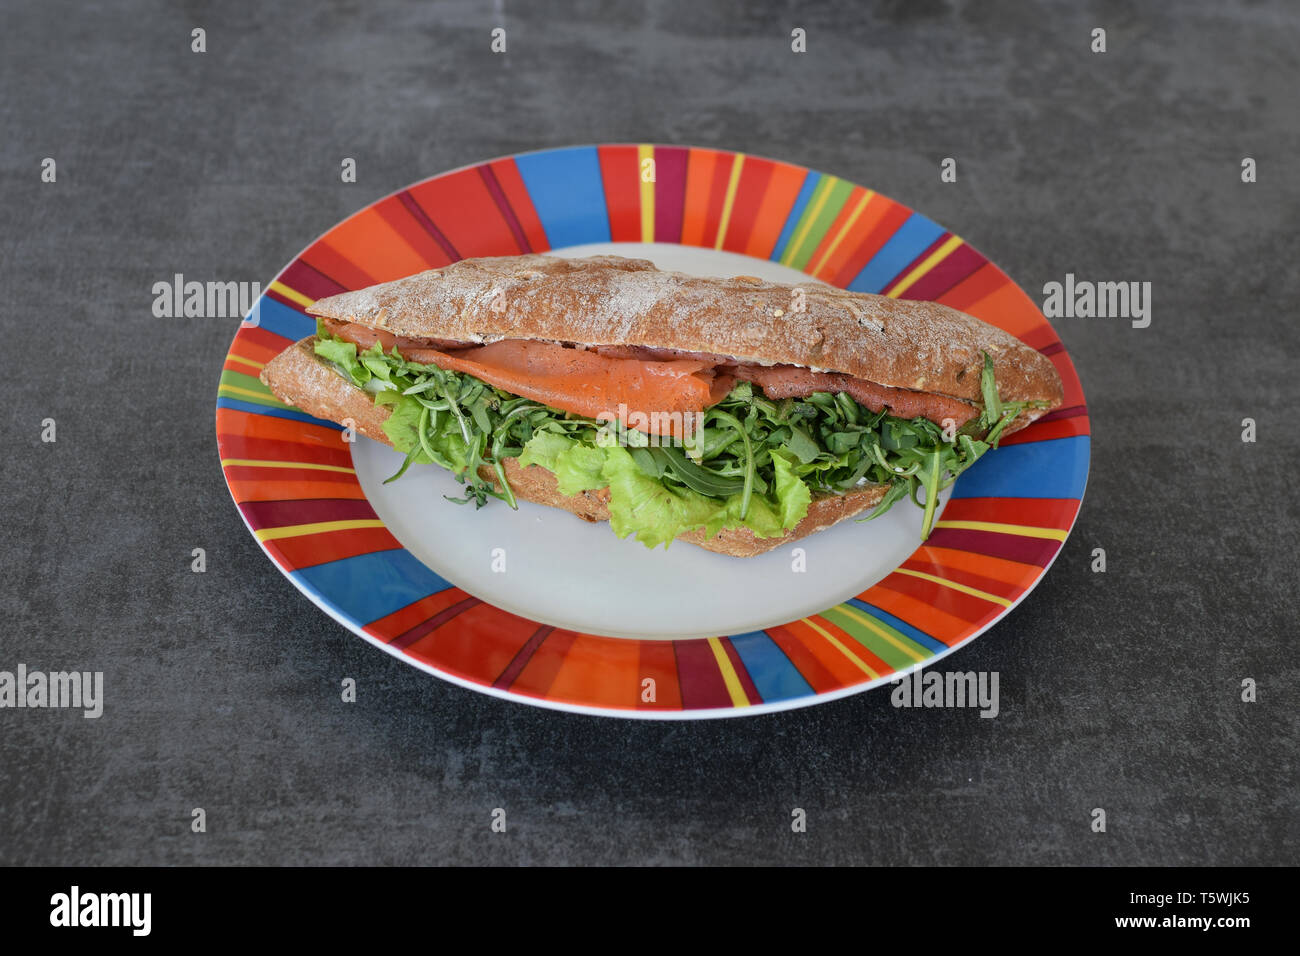 Geräucherter Lachs baguette Sandwich mit Rucola Rucola grüner Salat. Stockfoto